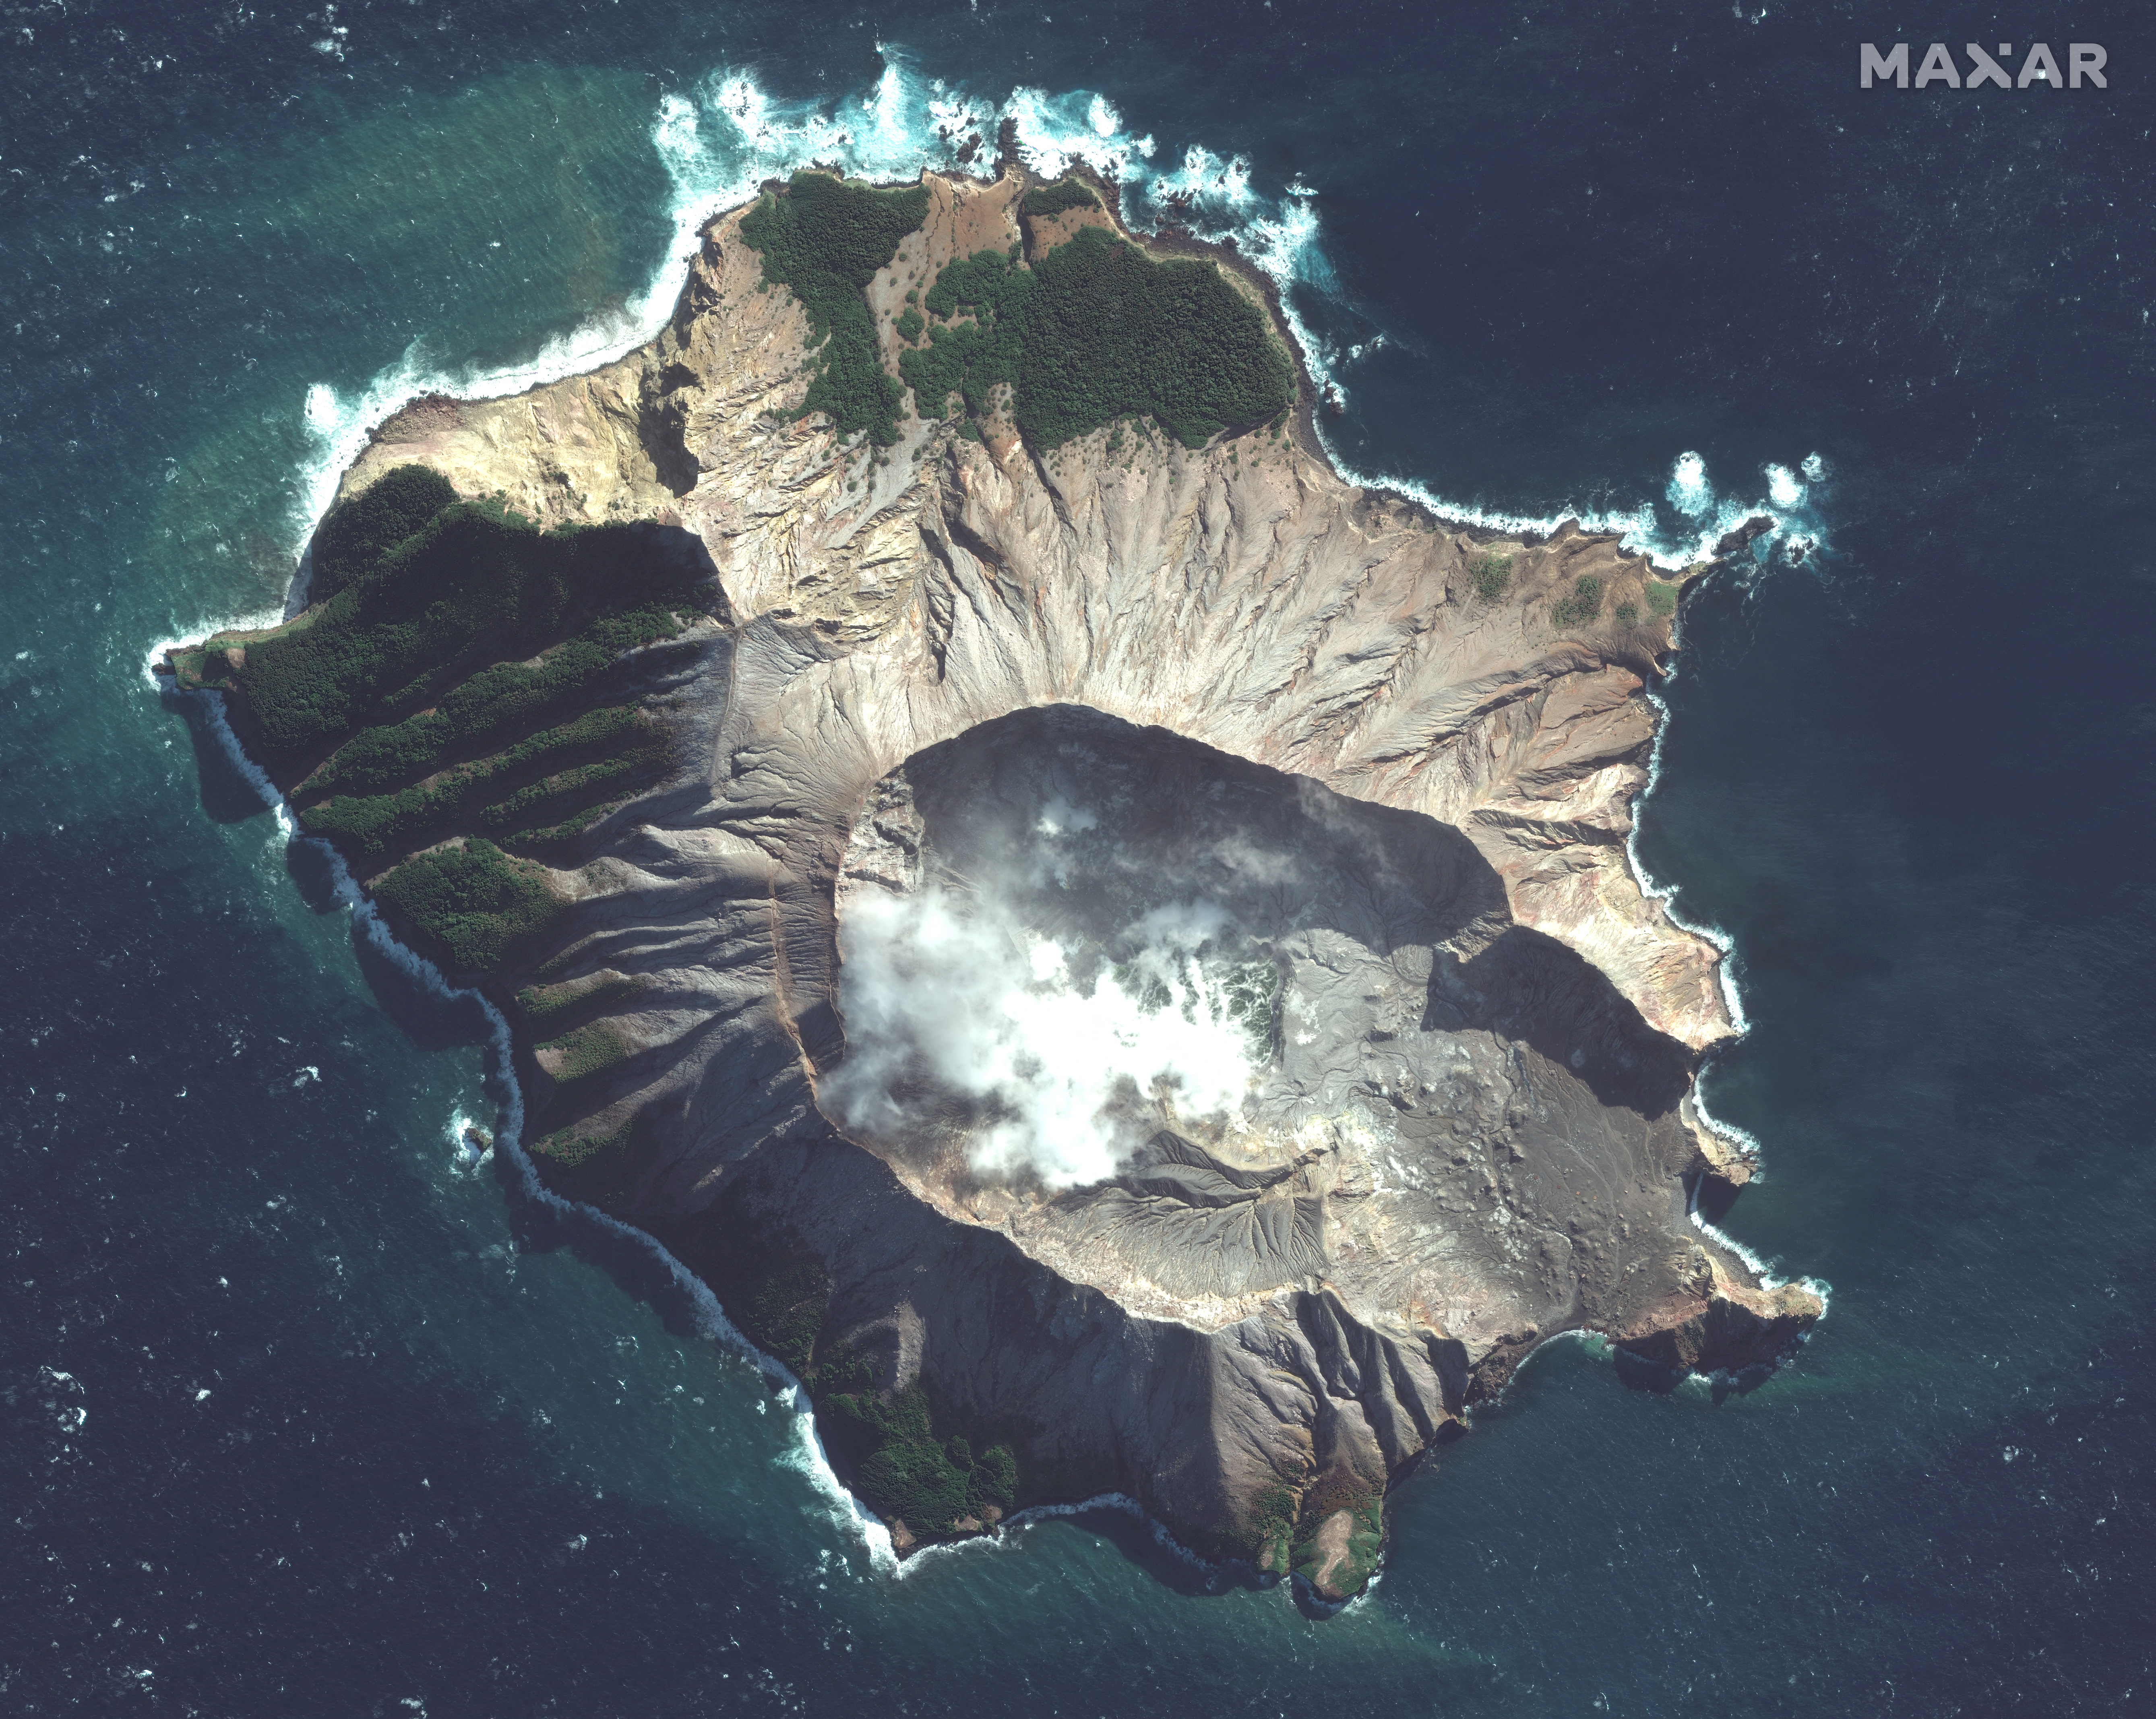 Műholdfelvétel a Fehér-szigeten fekvő vulkánról 2019. május 12-én, nyolc hónappal a kitörés előtt.